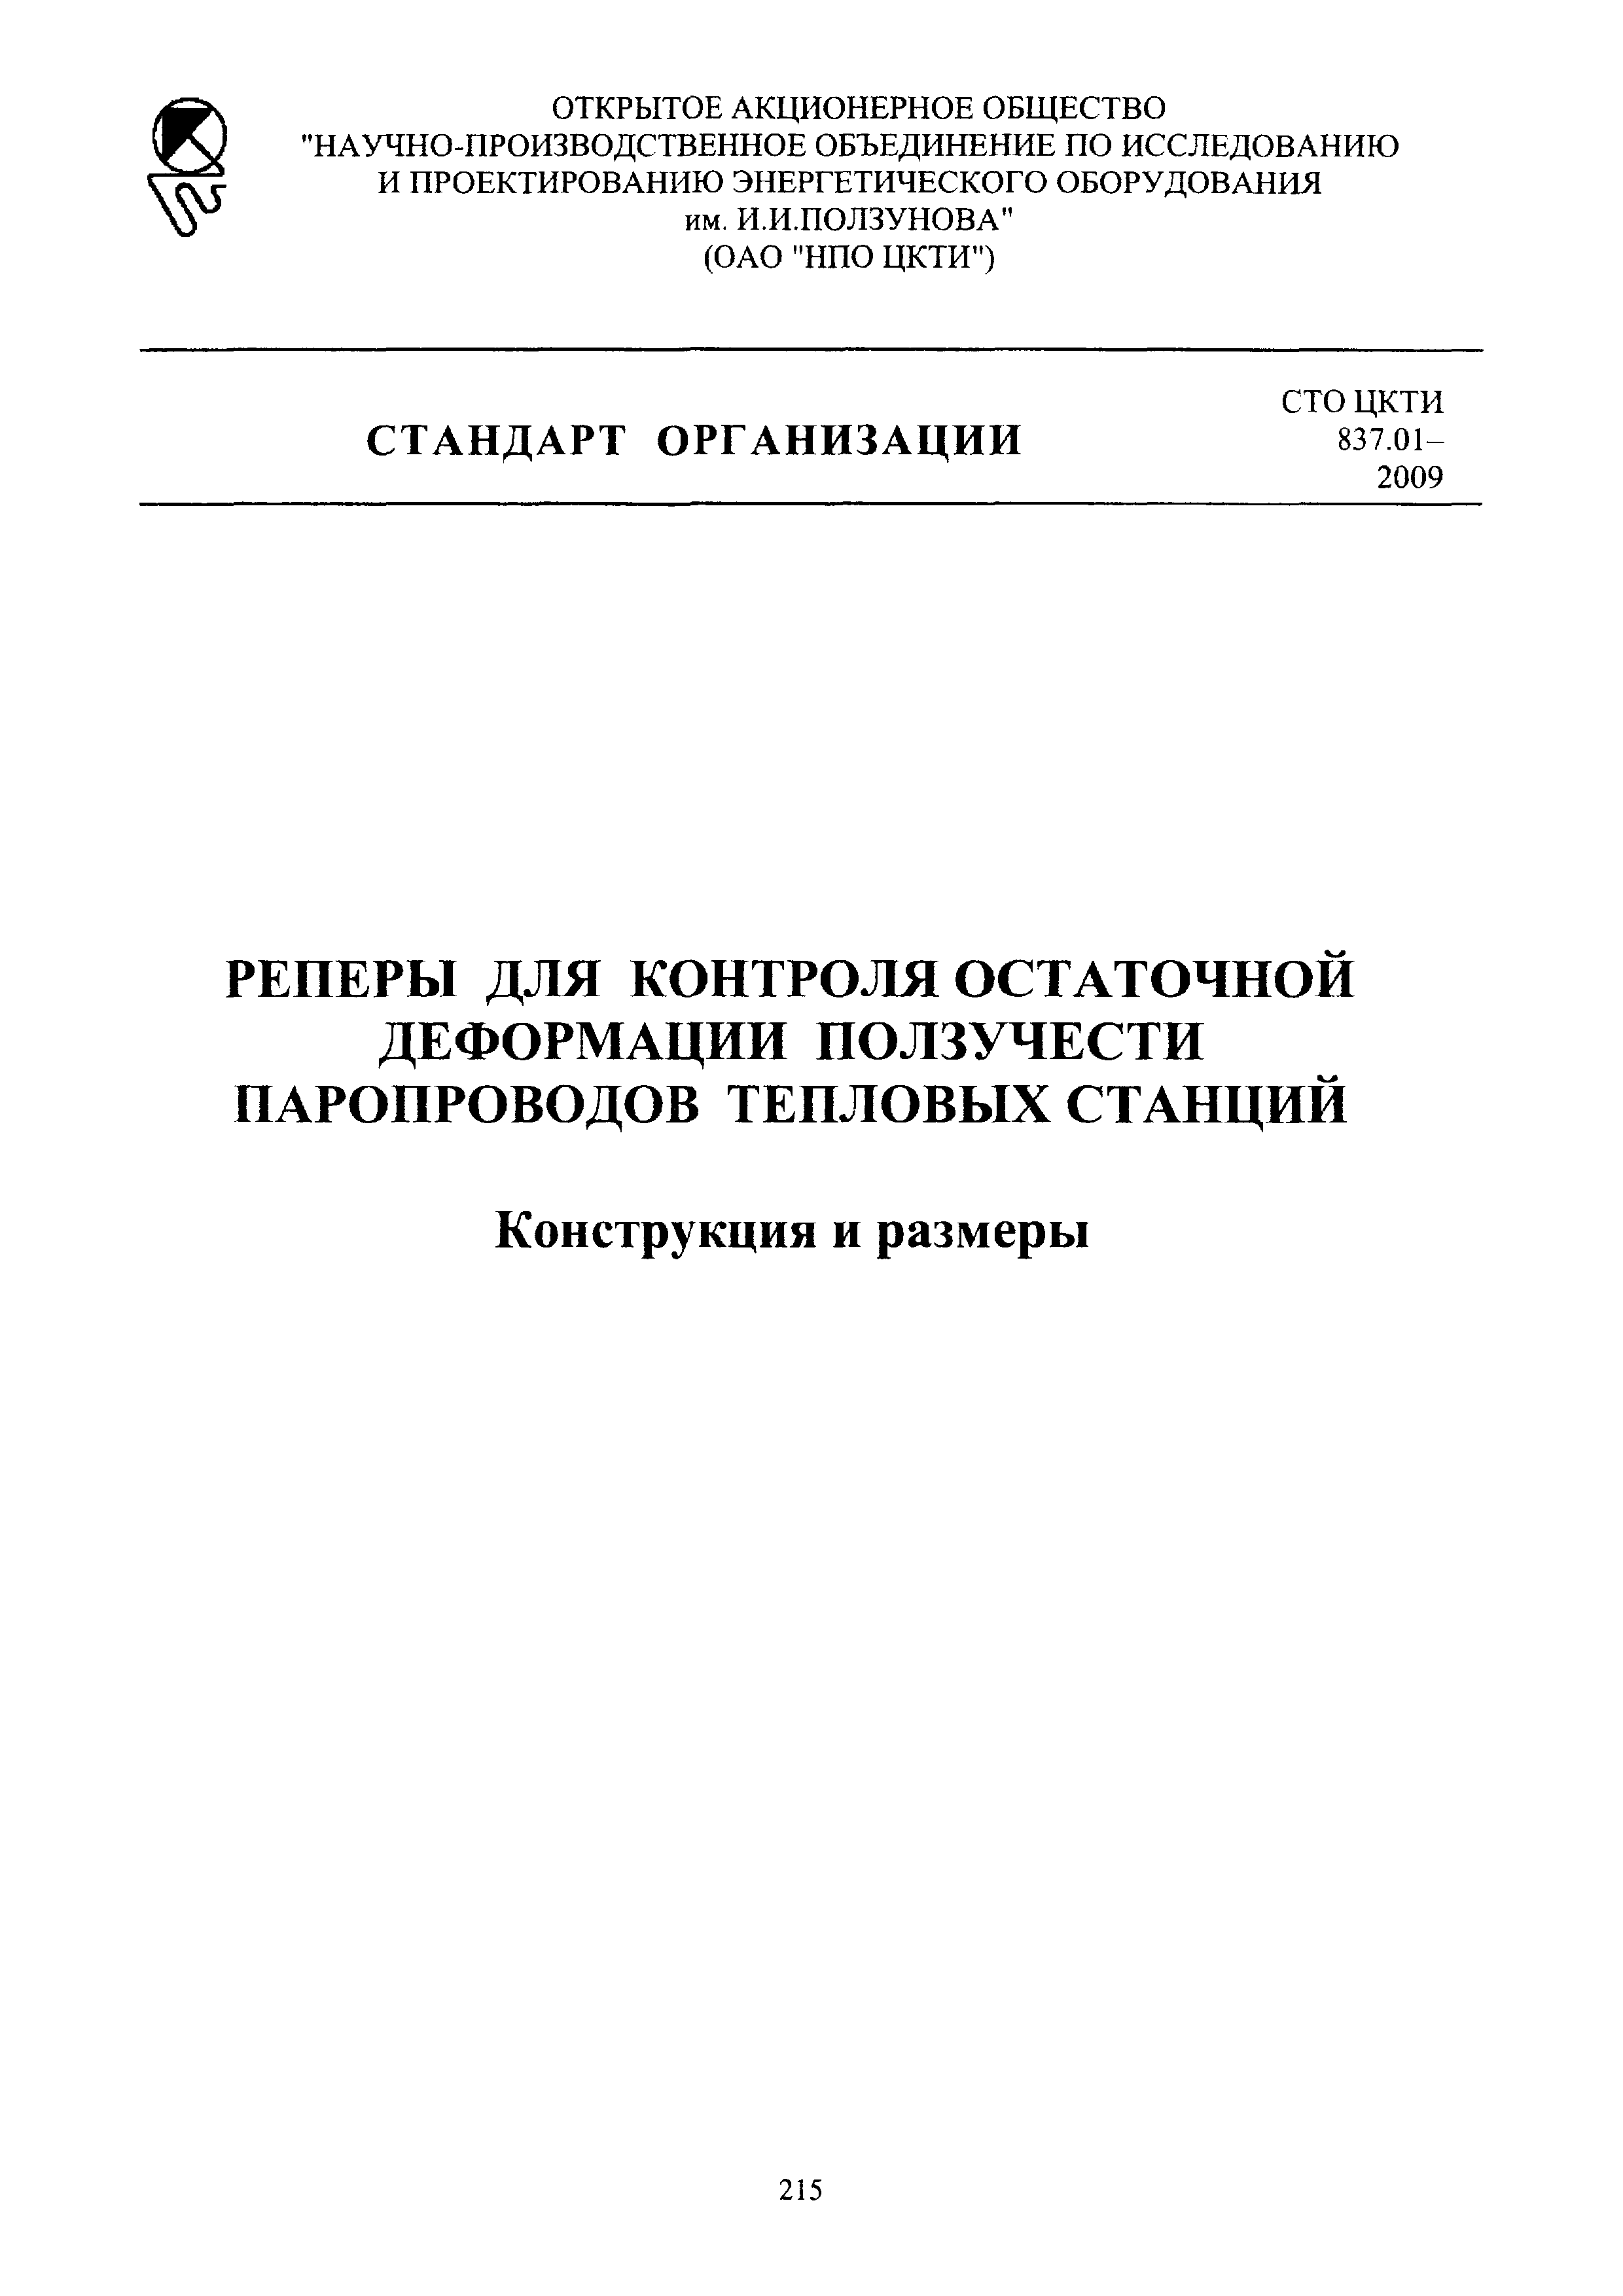 СТО ЦКТИ 837.01-2009